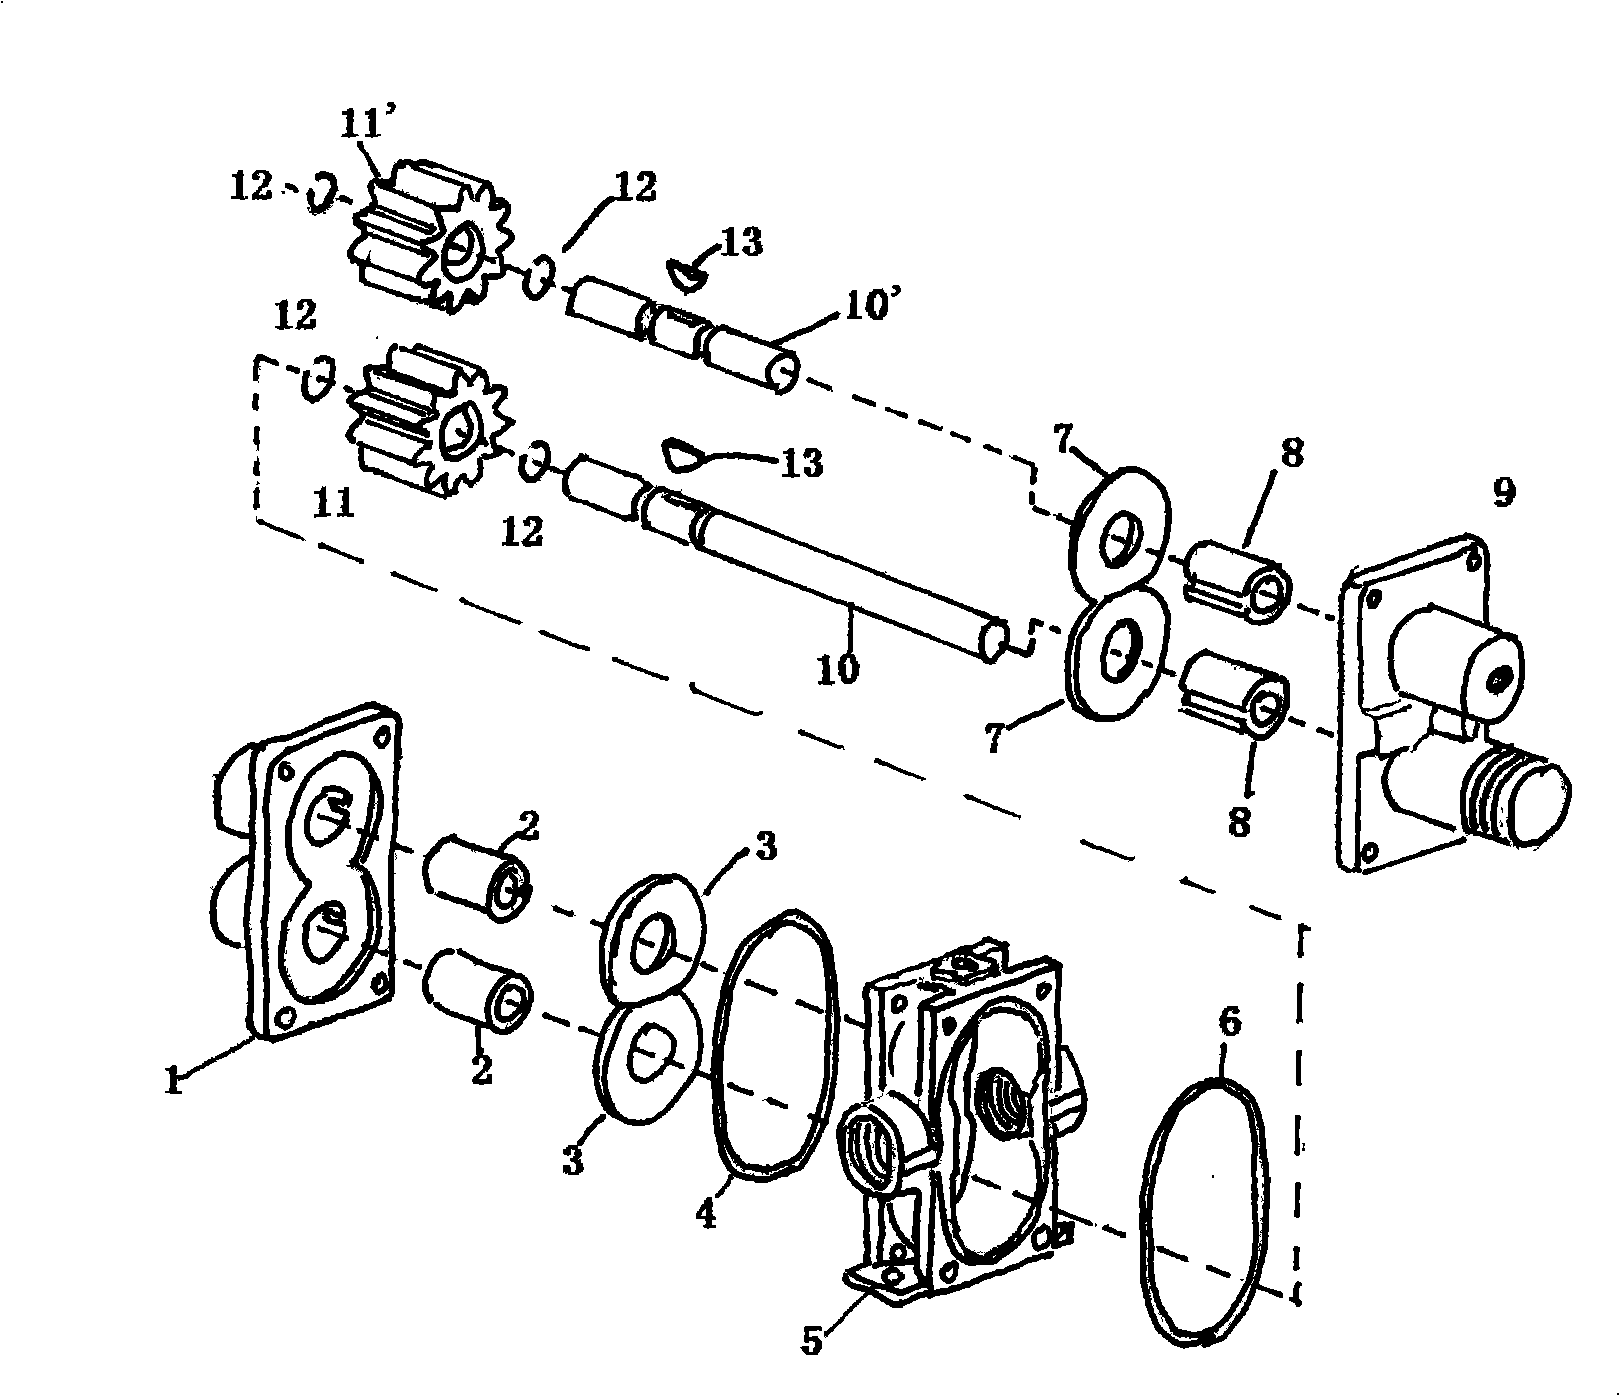 Mechanical seal gear pump